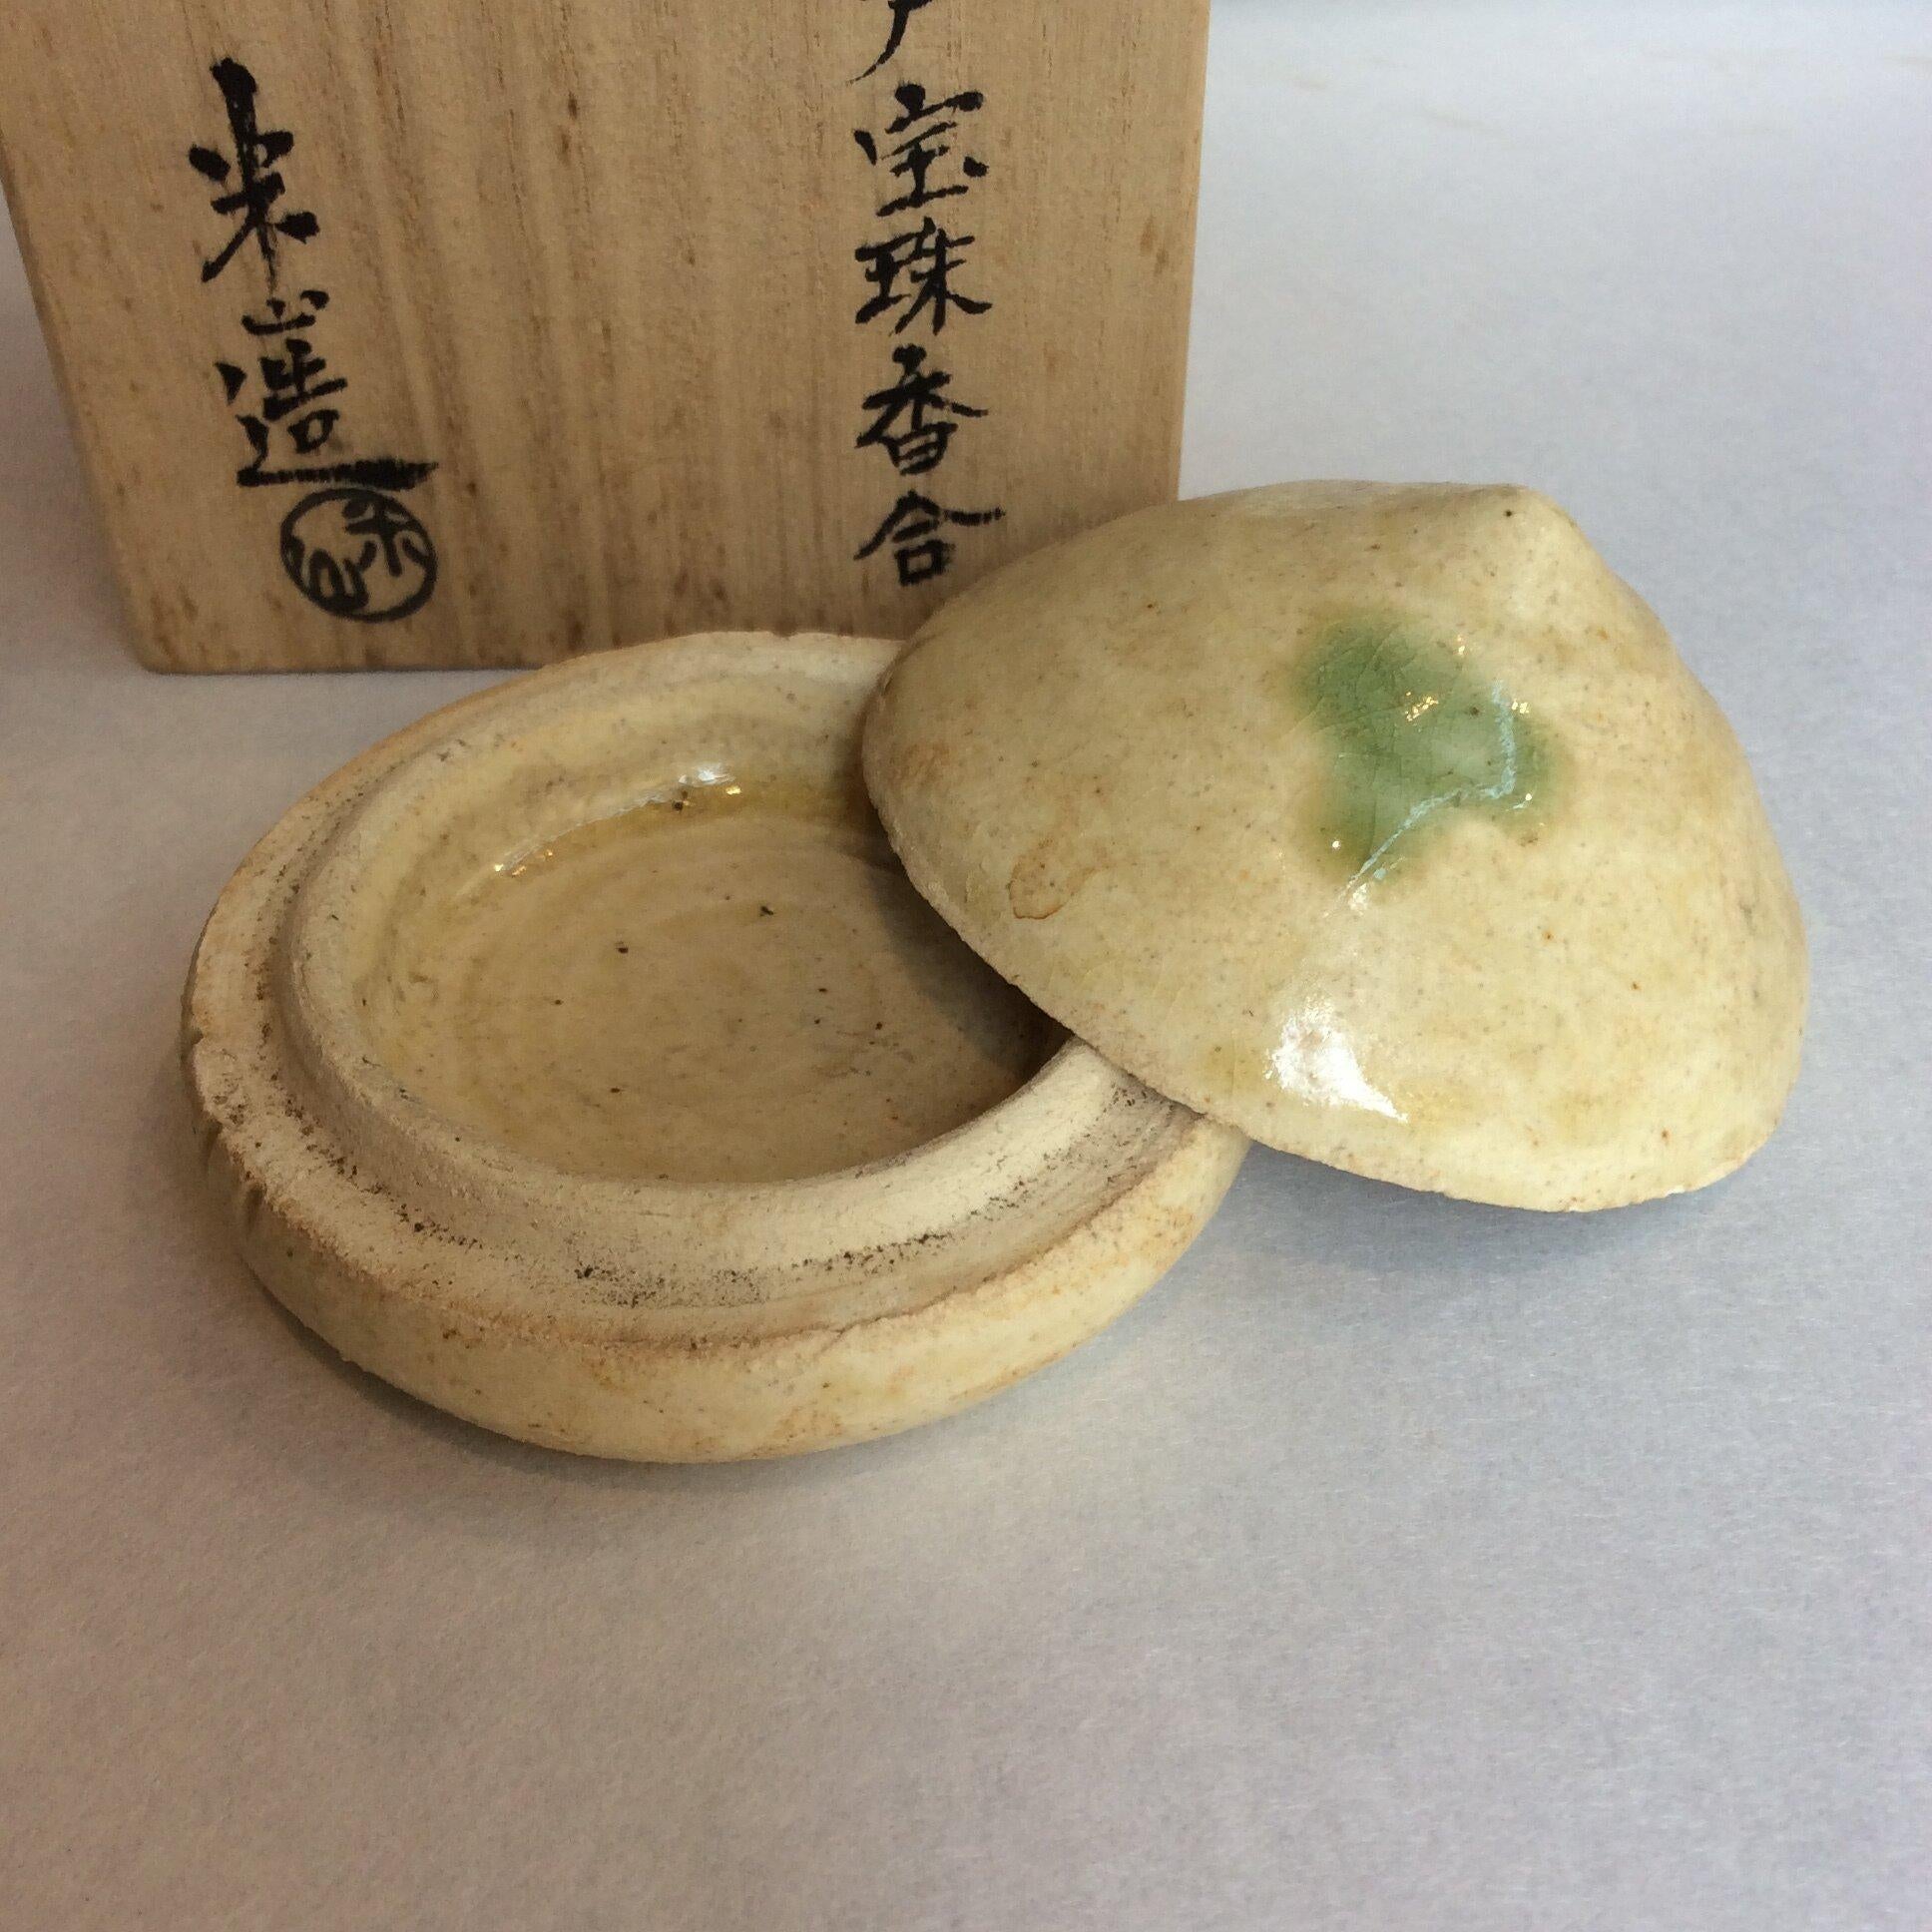 Il s'agit d'une boîte en porcelaine que l'on utilise lors de la cérémonie du thé. Il s'agit de Calle. Il a été fabriqué au Japon dans les années 1950, à l'ère Showa. Elle a été réalisée avec le style 